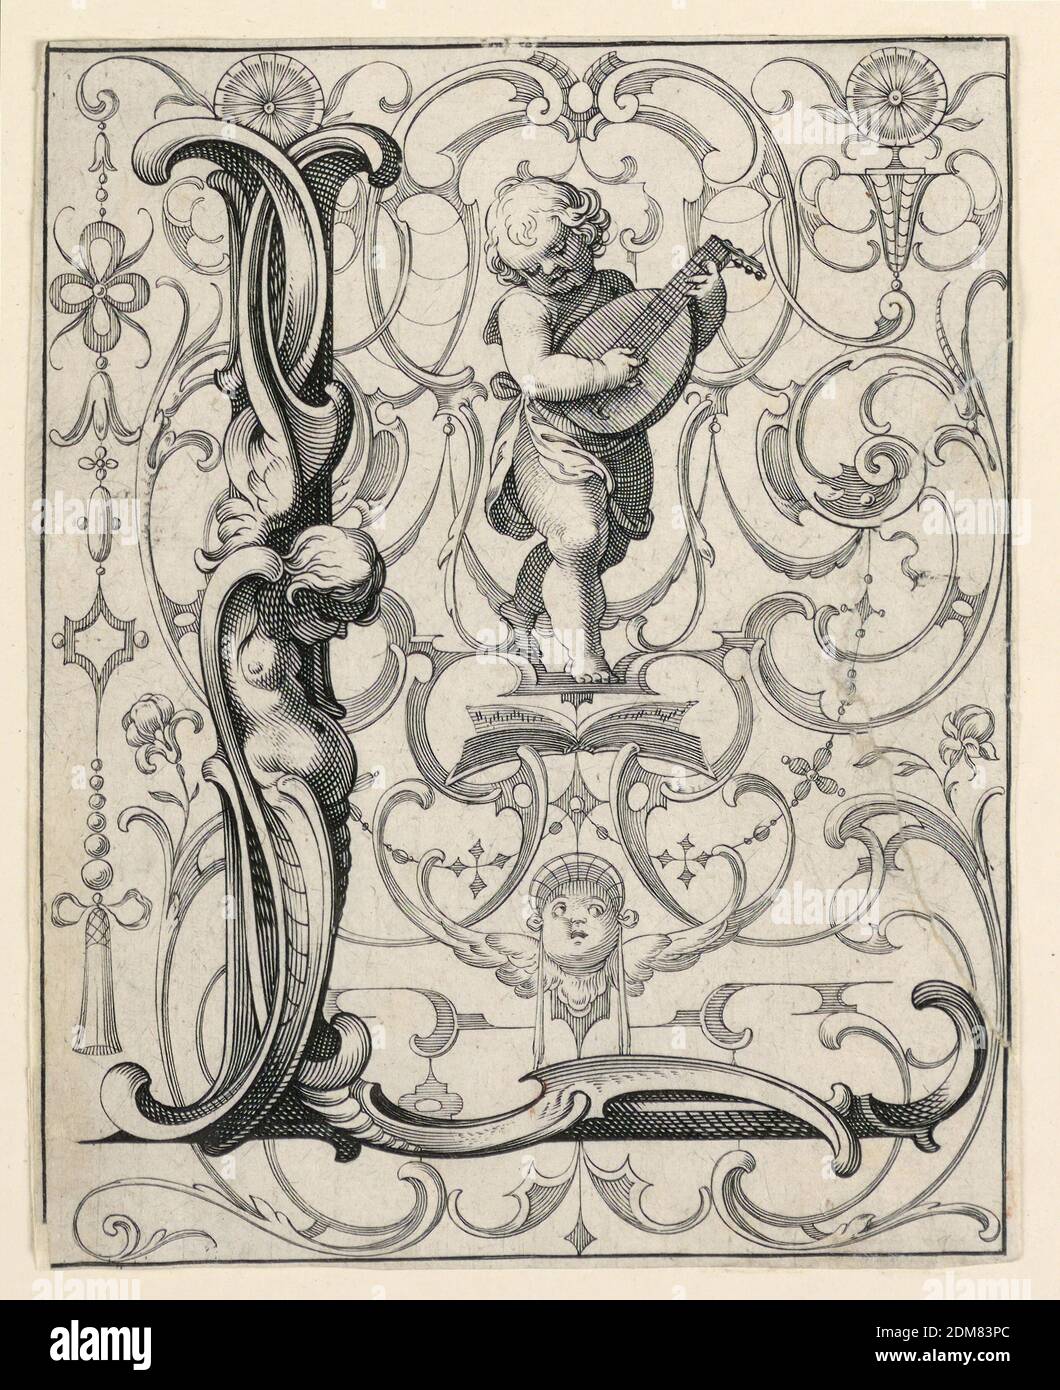 Panneau avec la lettre 'l' de la 'Newes ABC Büechlein', Lukas Kilian, allemand, 1579 – 1637, sur papier blanc cassé, UN garçon joue le luth ('laute')., Augsberg, Allemagne, 1627, Imprimer Banque D'Images